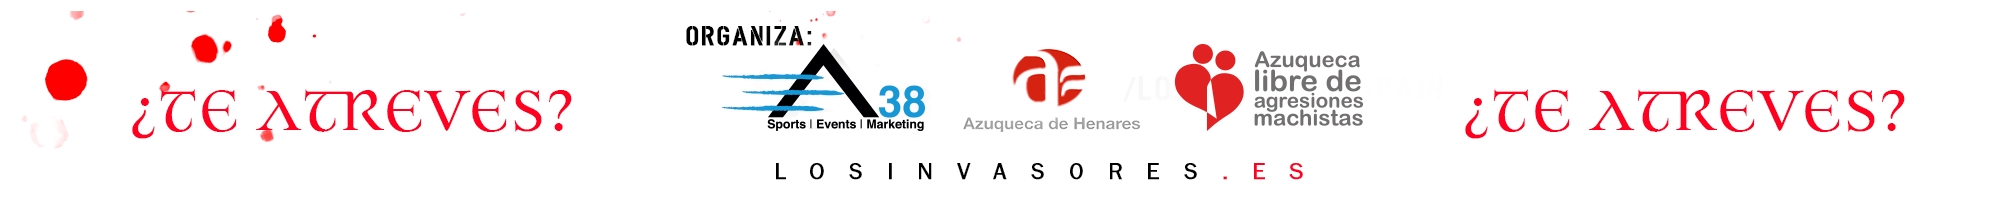 Maquillaje LOS INVASORES en Azuqueca de Henares Edición Vampírica 31-10-2019